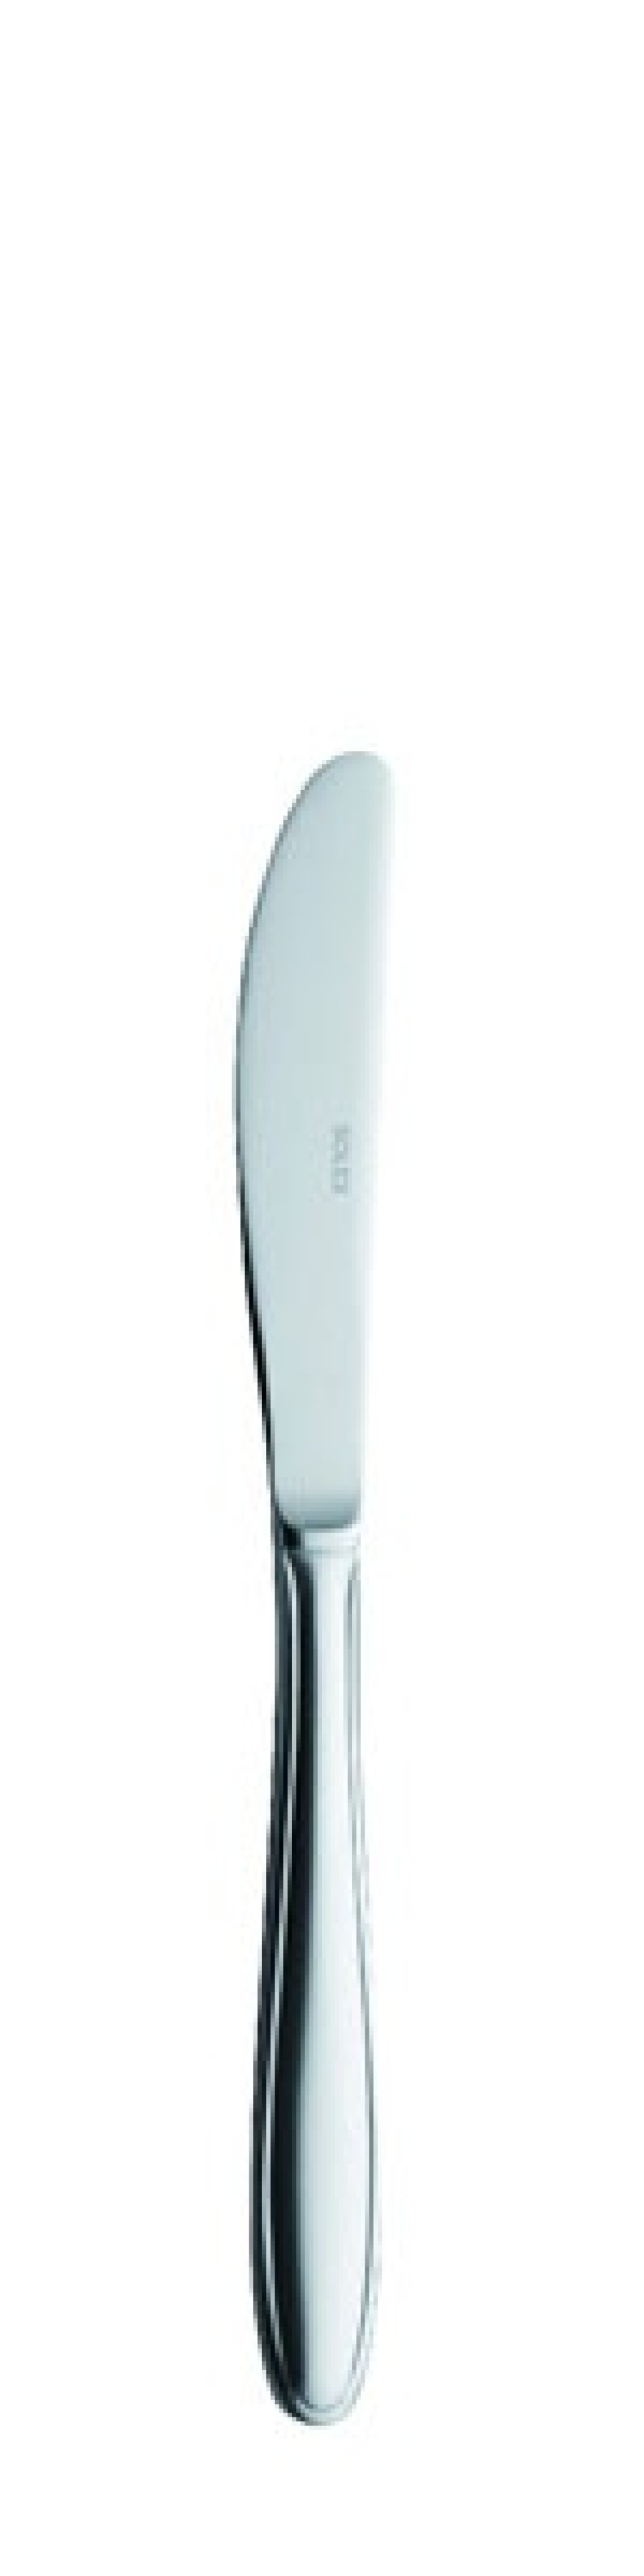 Pronto Tafelmesser 210 mm - Solex in der Gruppe Tischgedeck / Besteck / Messer bei The Kitchen Lab (1284-21398)